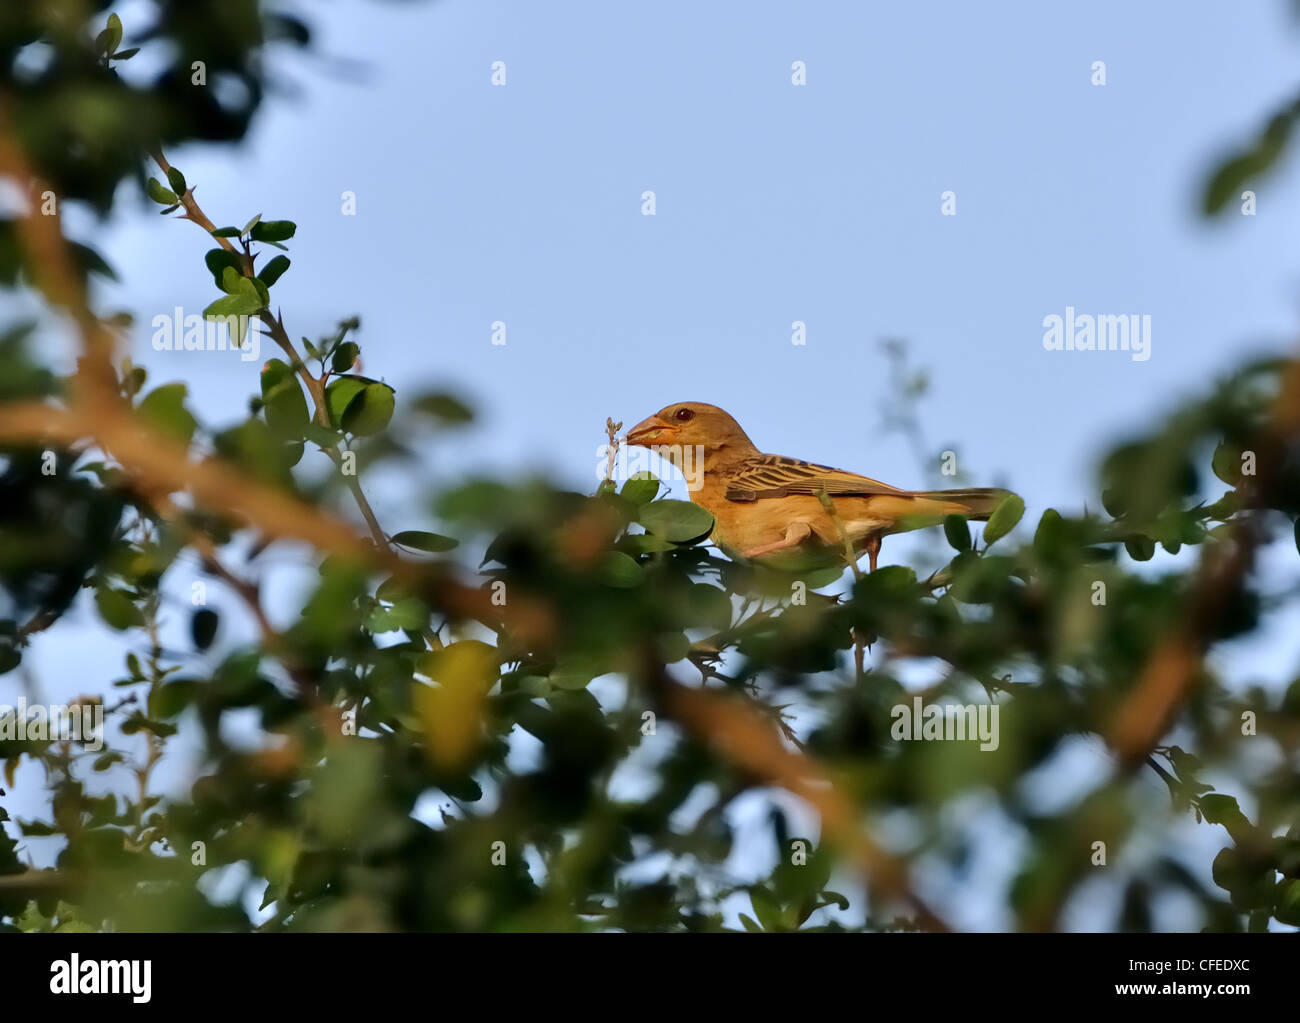 Un Baya Weaver Bird perché sur un arbre avec des feuilles vertes Banque D'Images